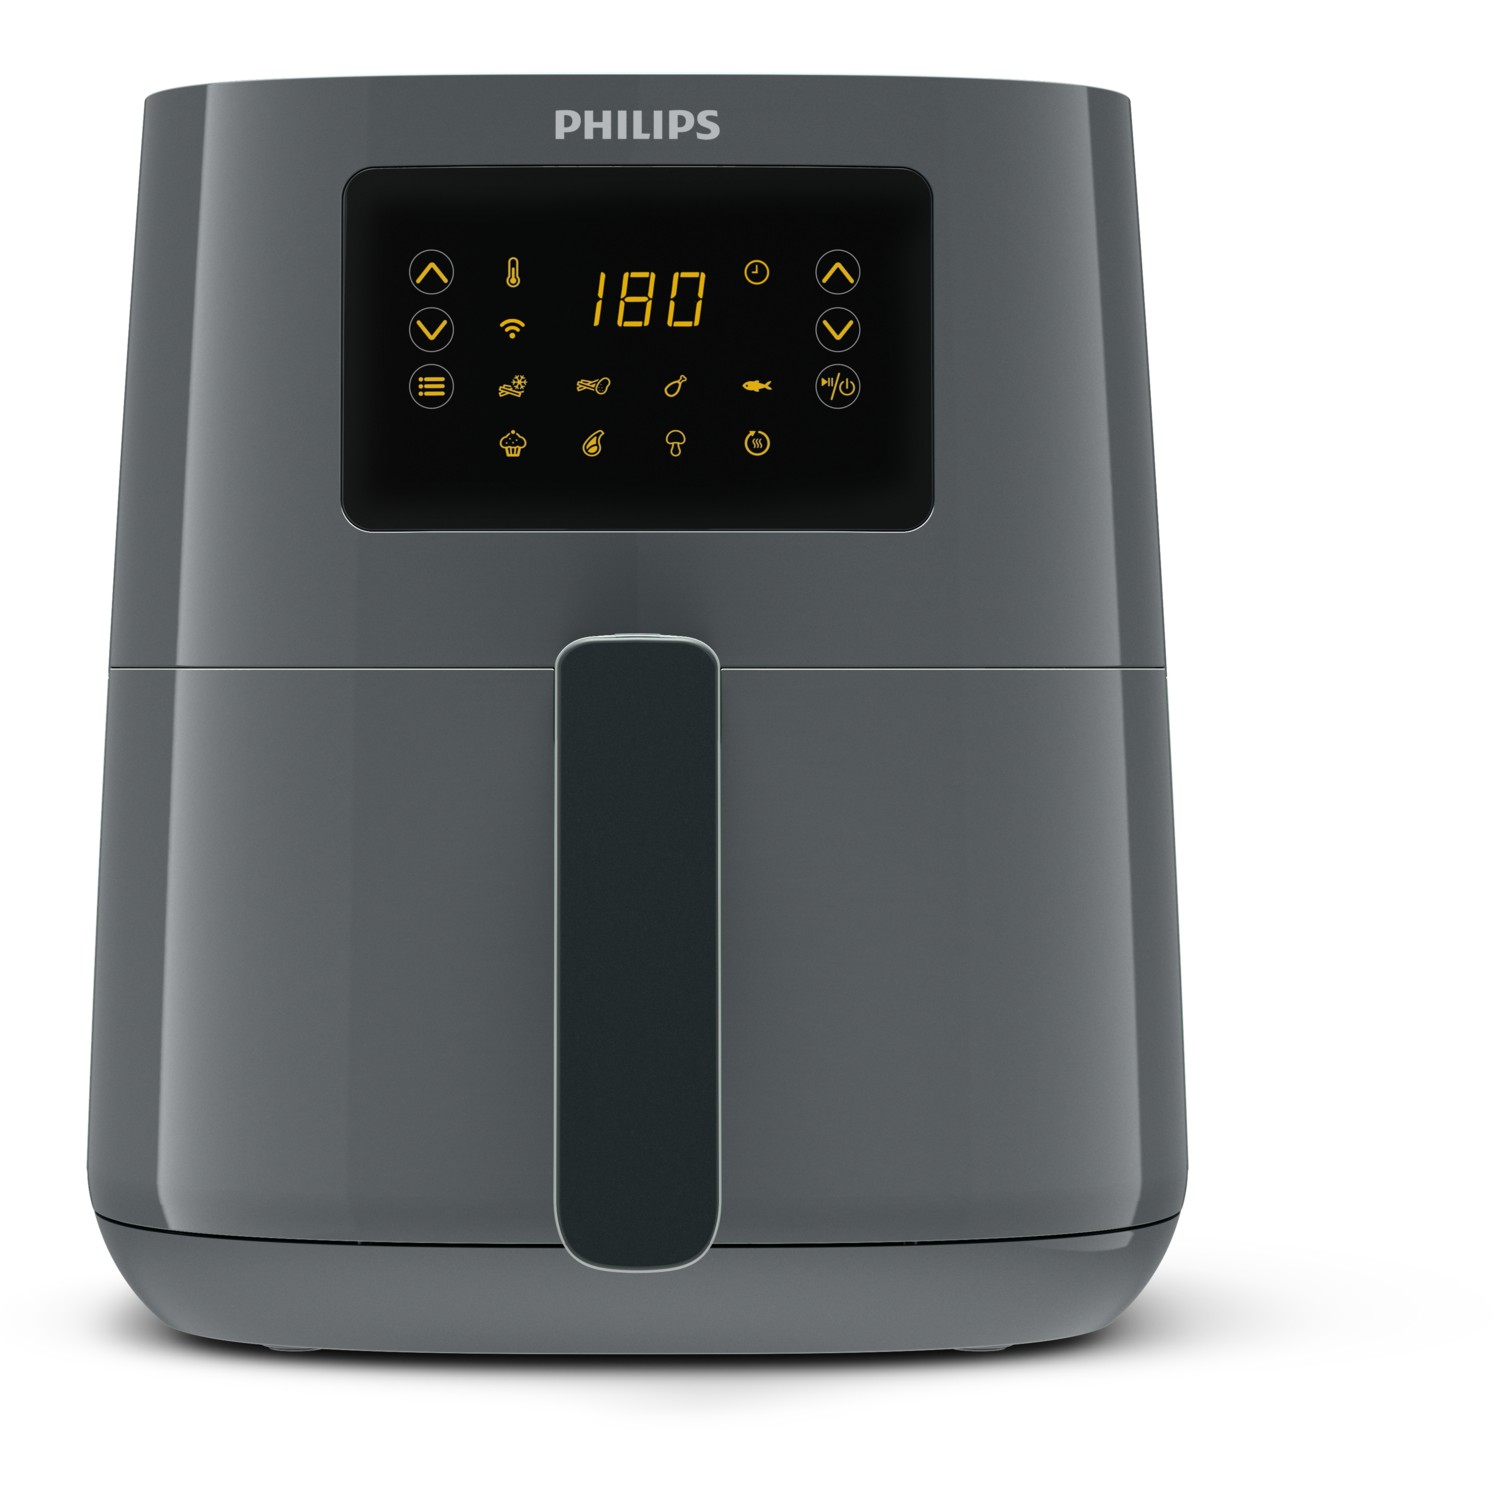 Philips 5000 series HD9255/60 fryer - HD9255/60